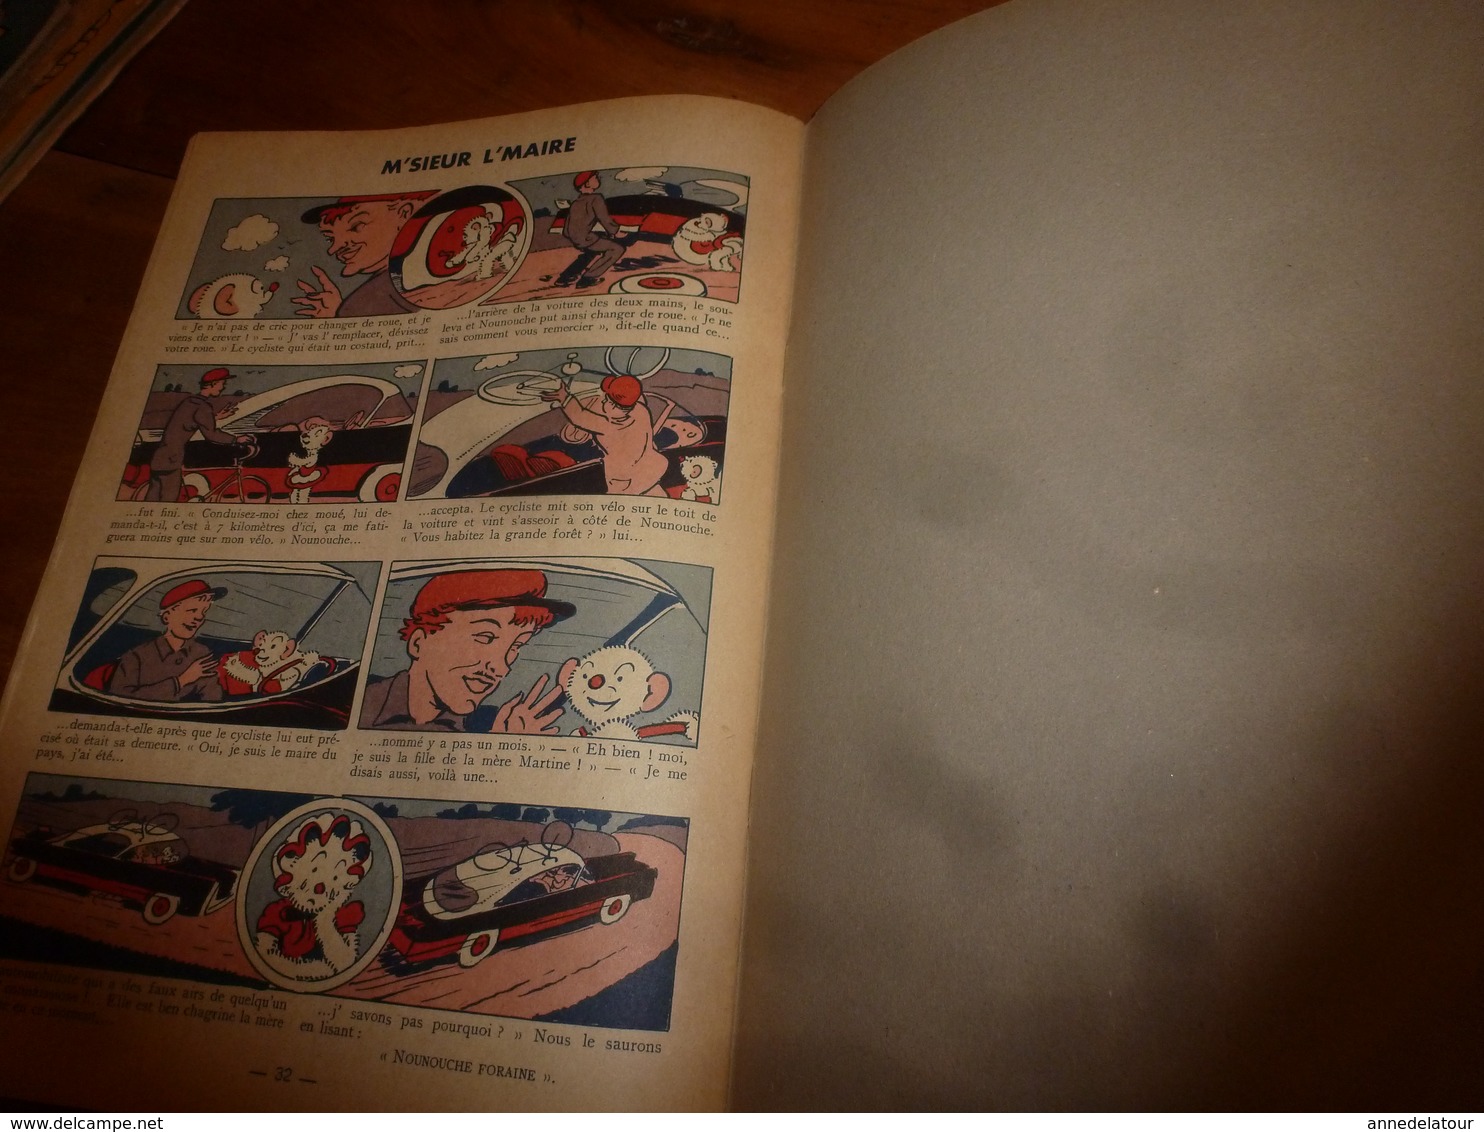 1954 NOUNOUCHE  à la pouponnière,   texte et dessins de DURST